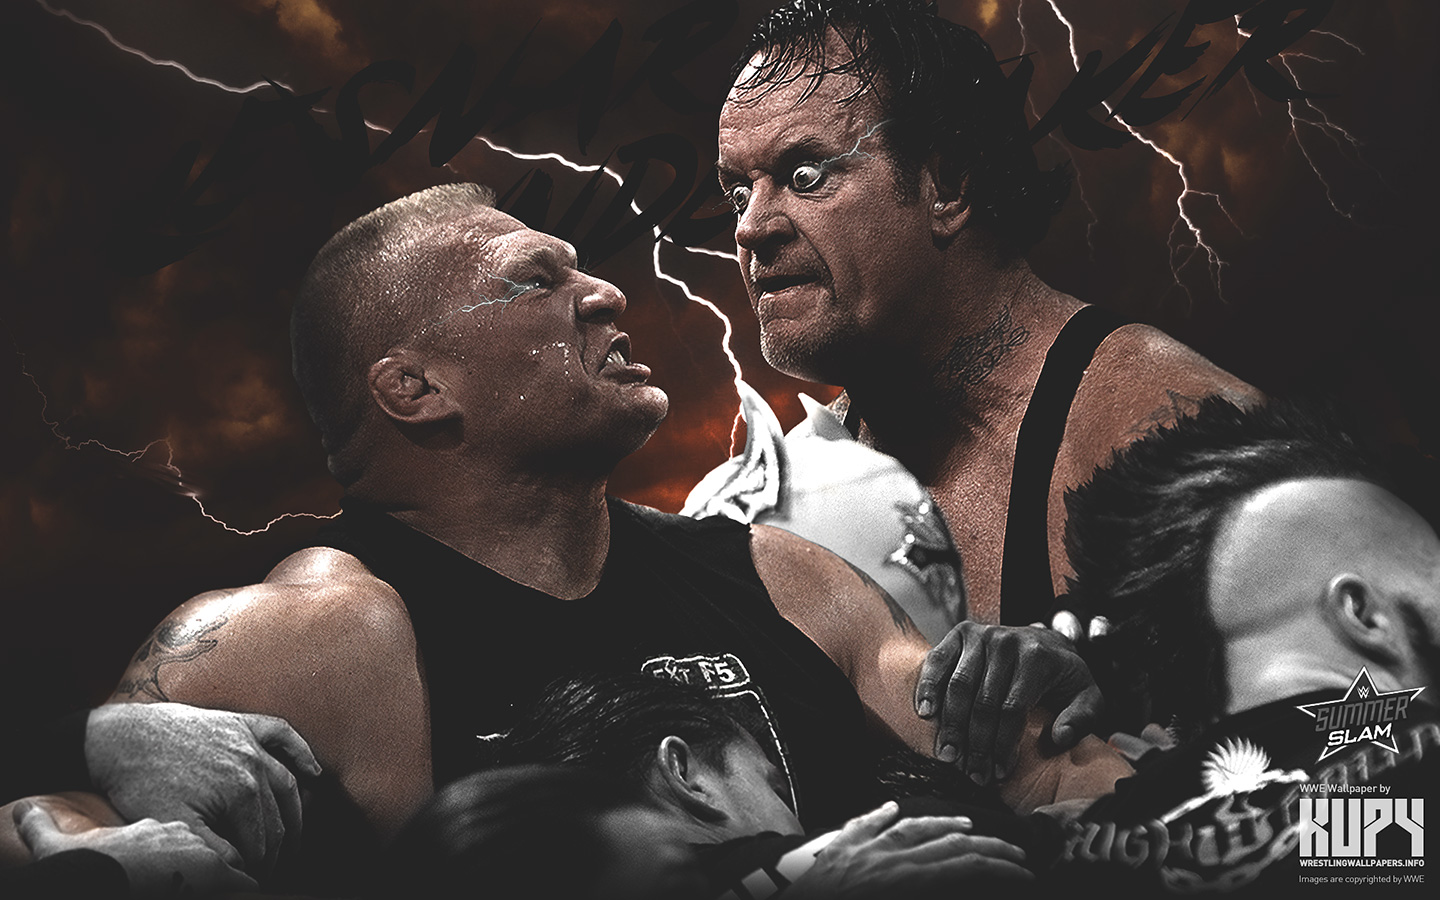 Wwe Image Summerslam Brock Lesnar Vs The Undertaker HD